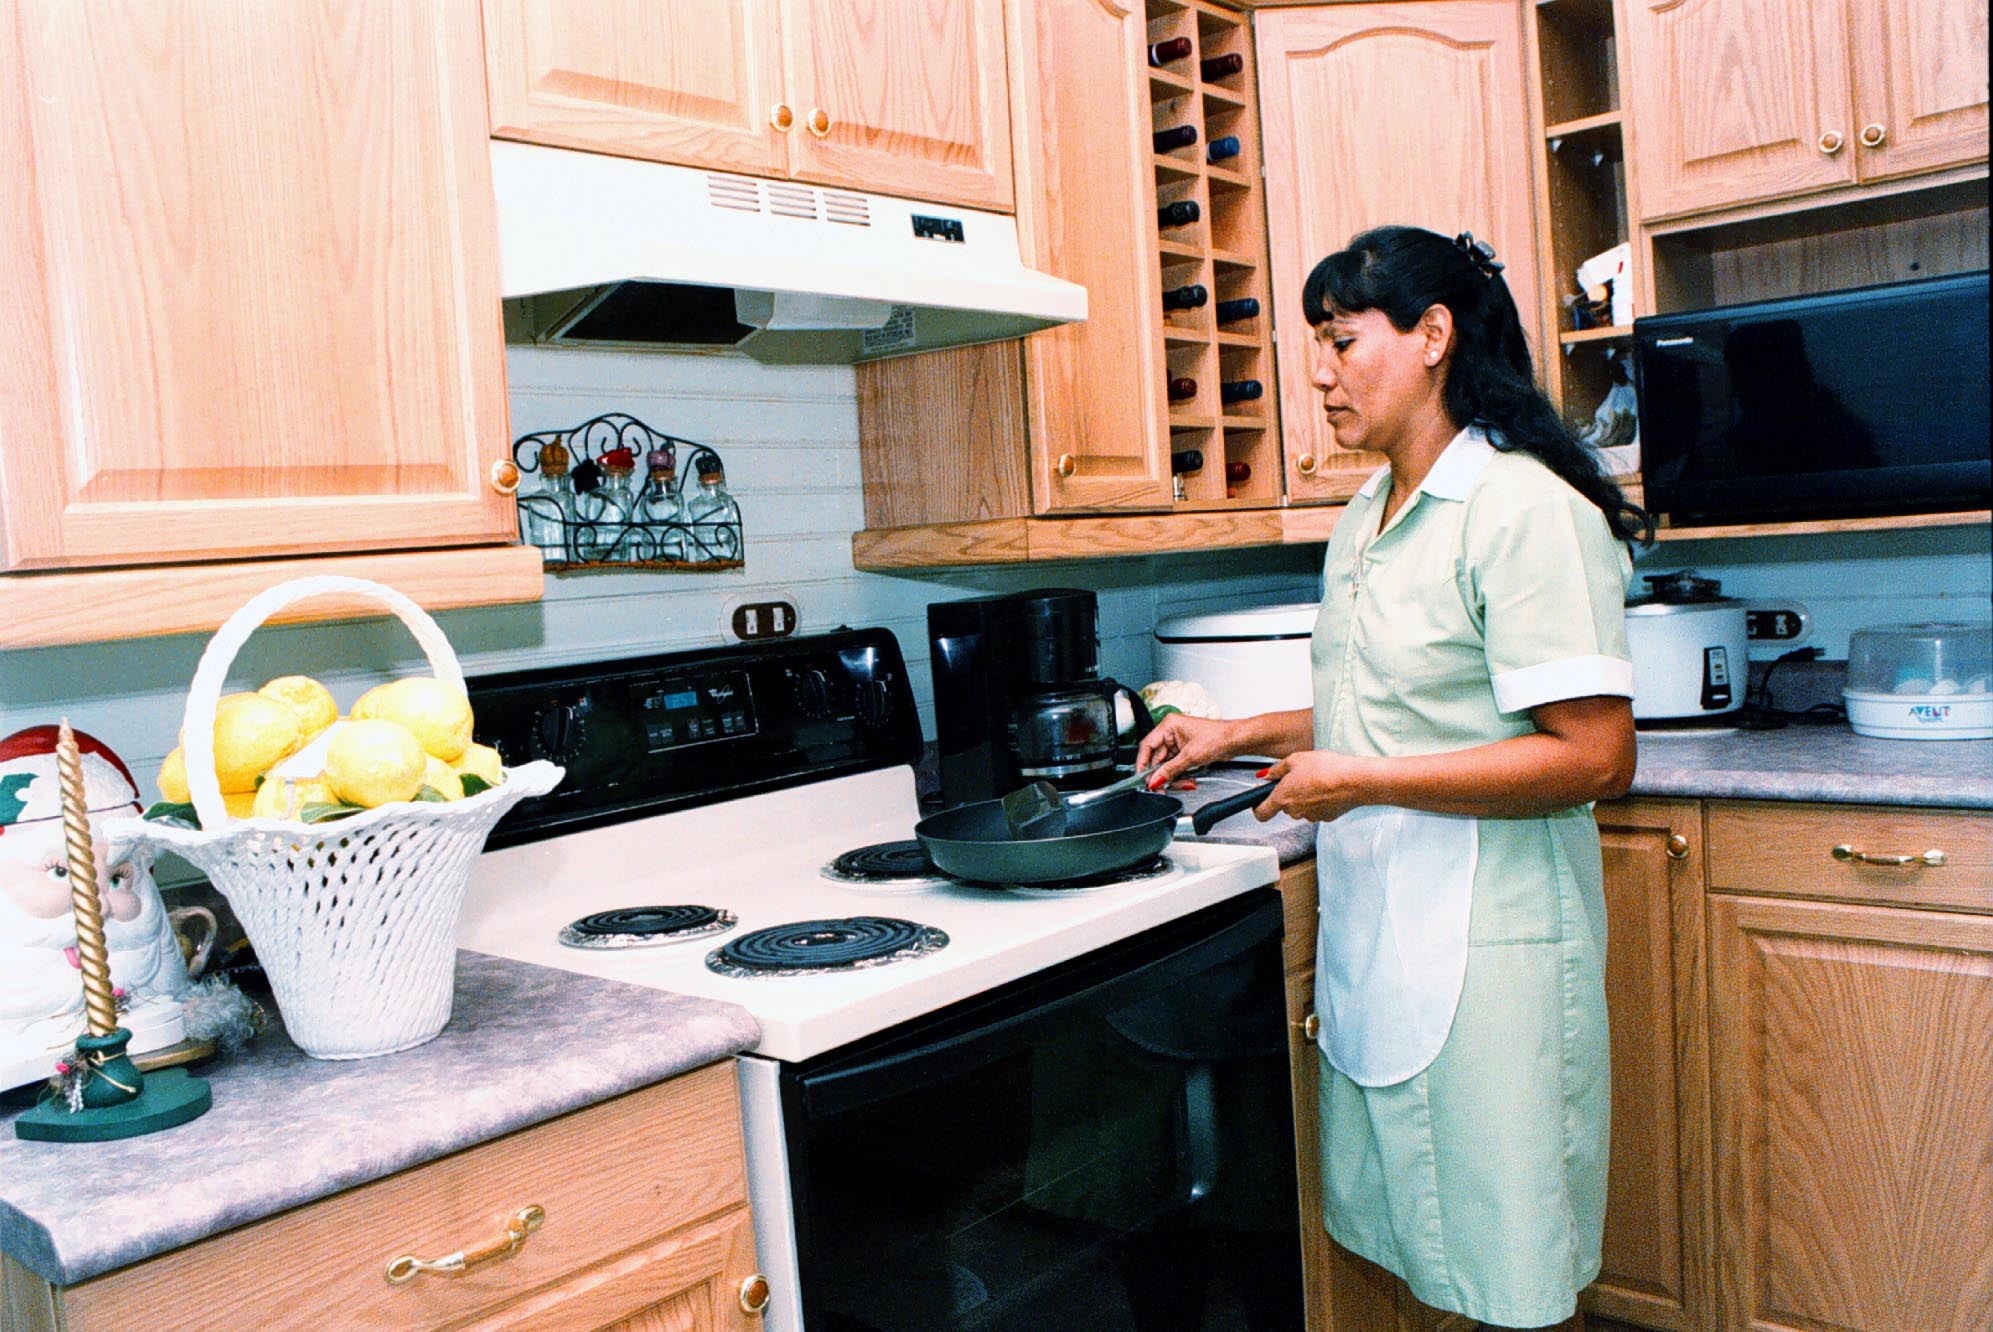 Cantidad de trabajadoras domésticas aseguradas pasó de 200 por mes a 456 en el último año